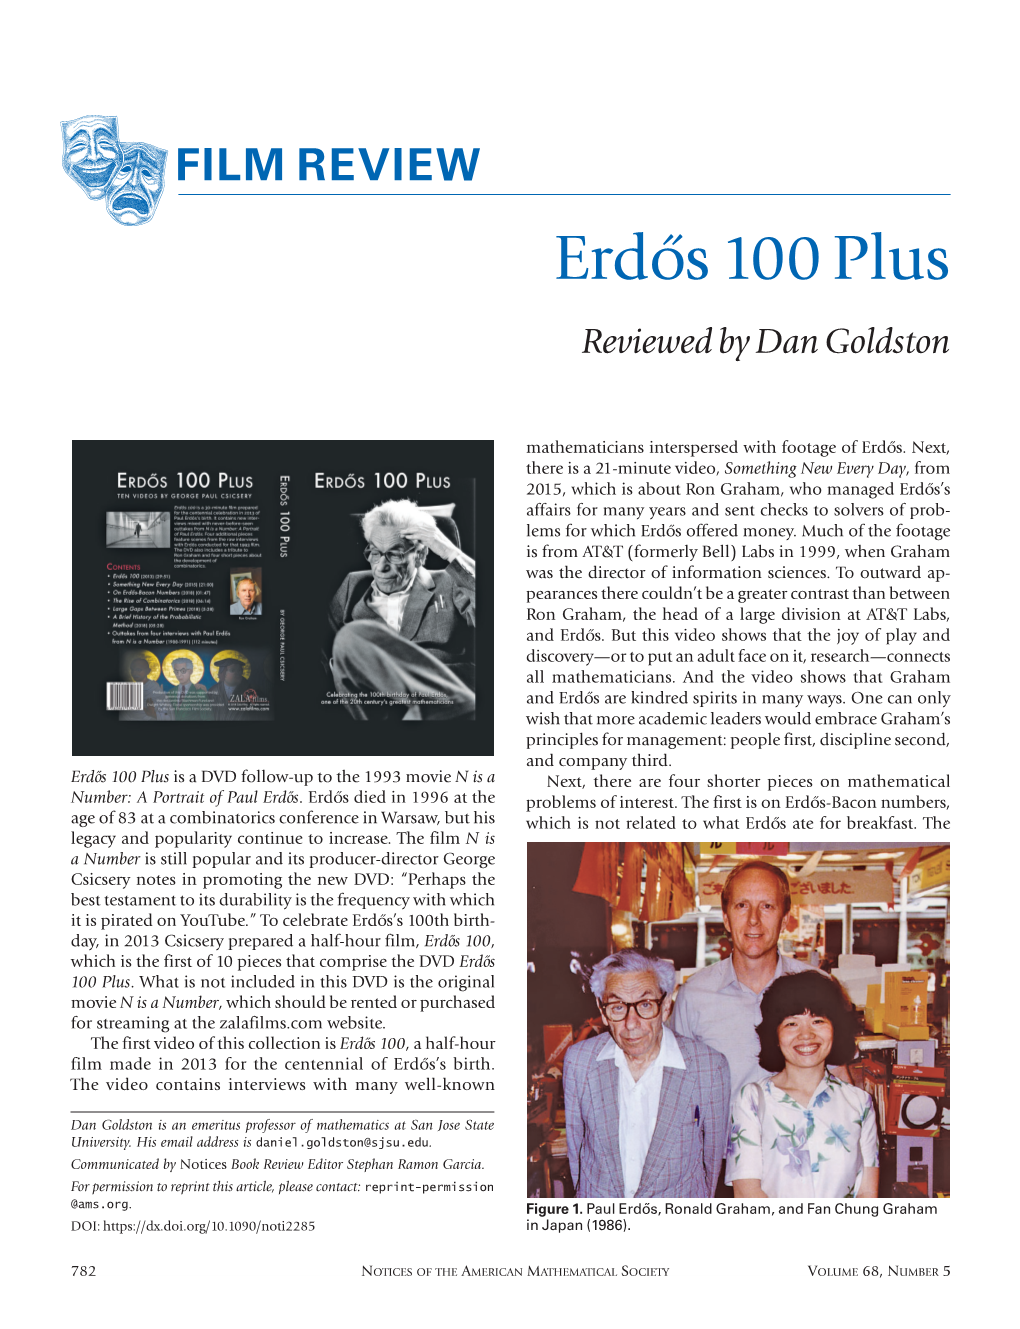 Erdo˝S 100 Plus Reviewed by Dan Goldston